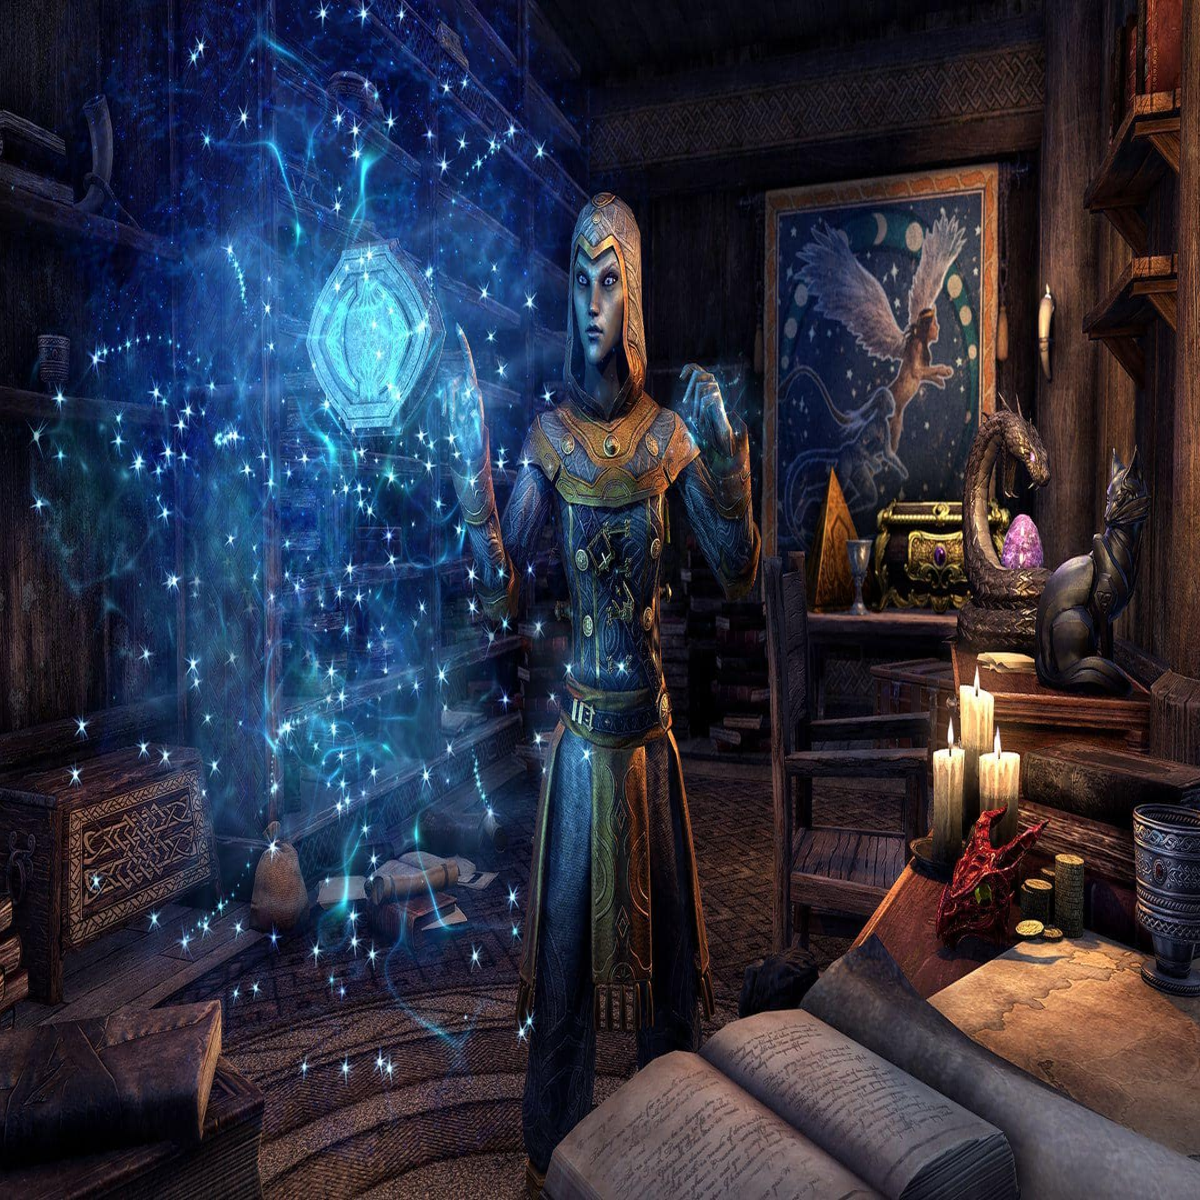 Coming to ESOTU - The Elder Scrolls Online